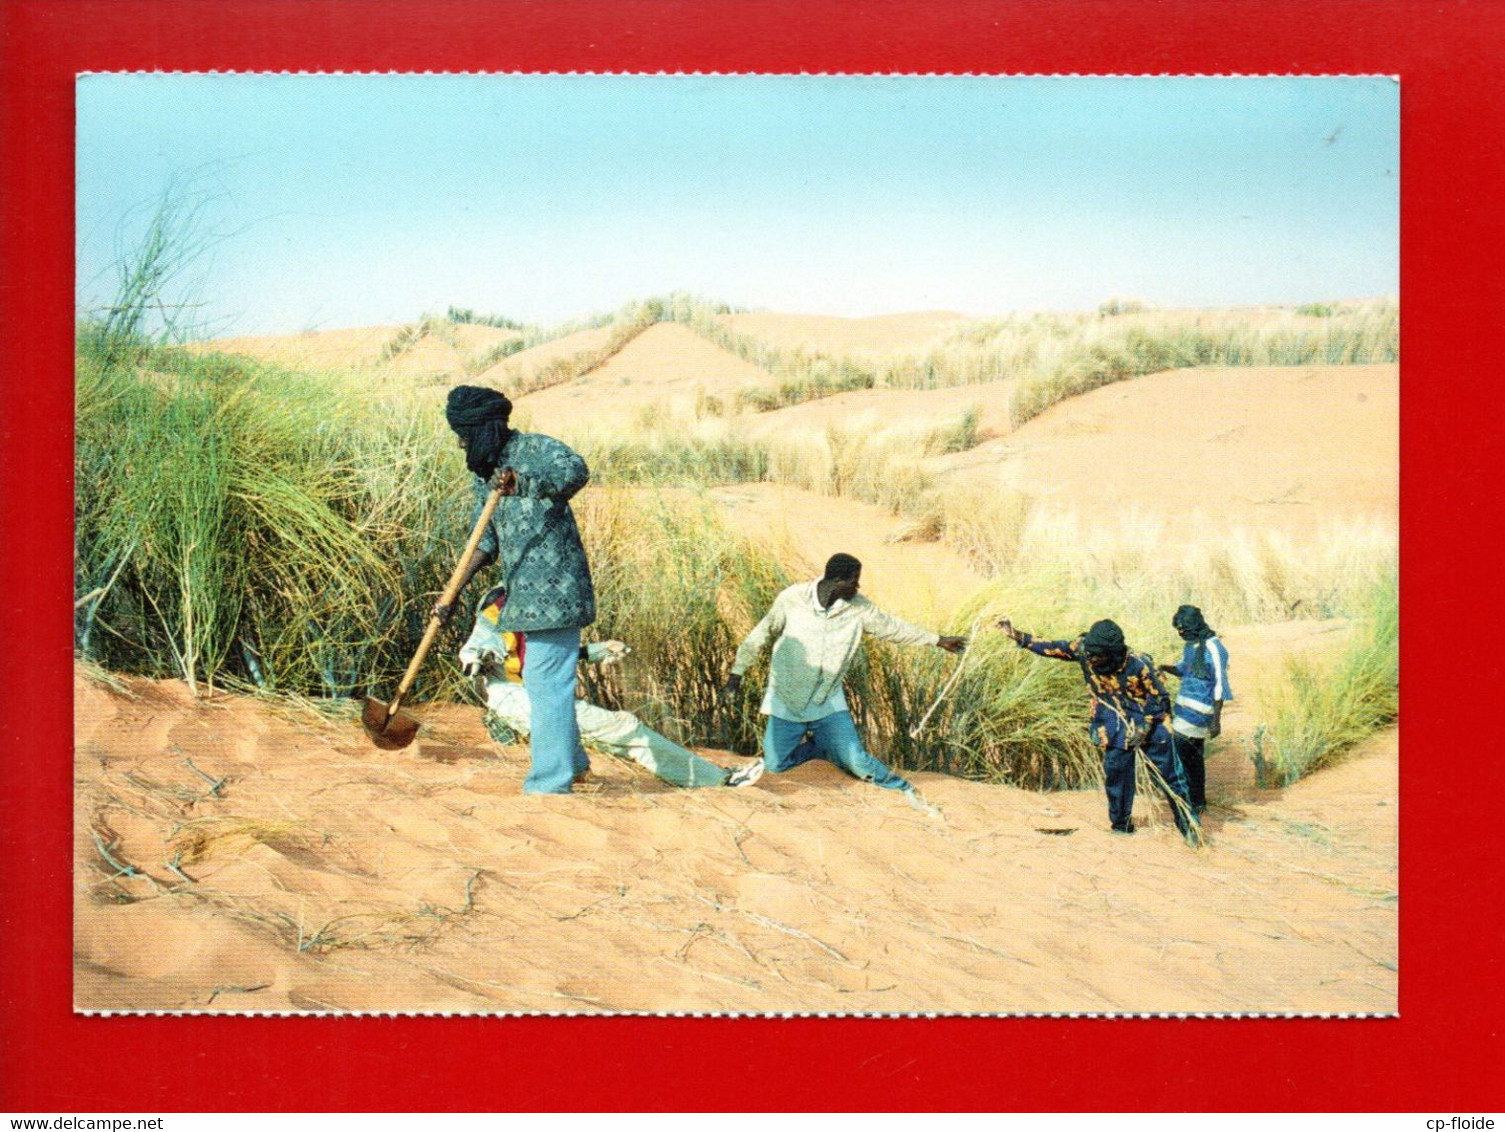 MAURITANIE . SORTIE DE NOUAKCHOFF LES VENTS DE SABLE SONT OMNI PRÉSENTS. L'HOMME DEFIE LE DÉSERT - Ref. N°36795 - - Mauritania